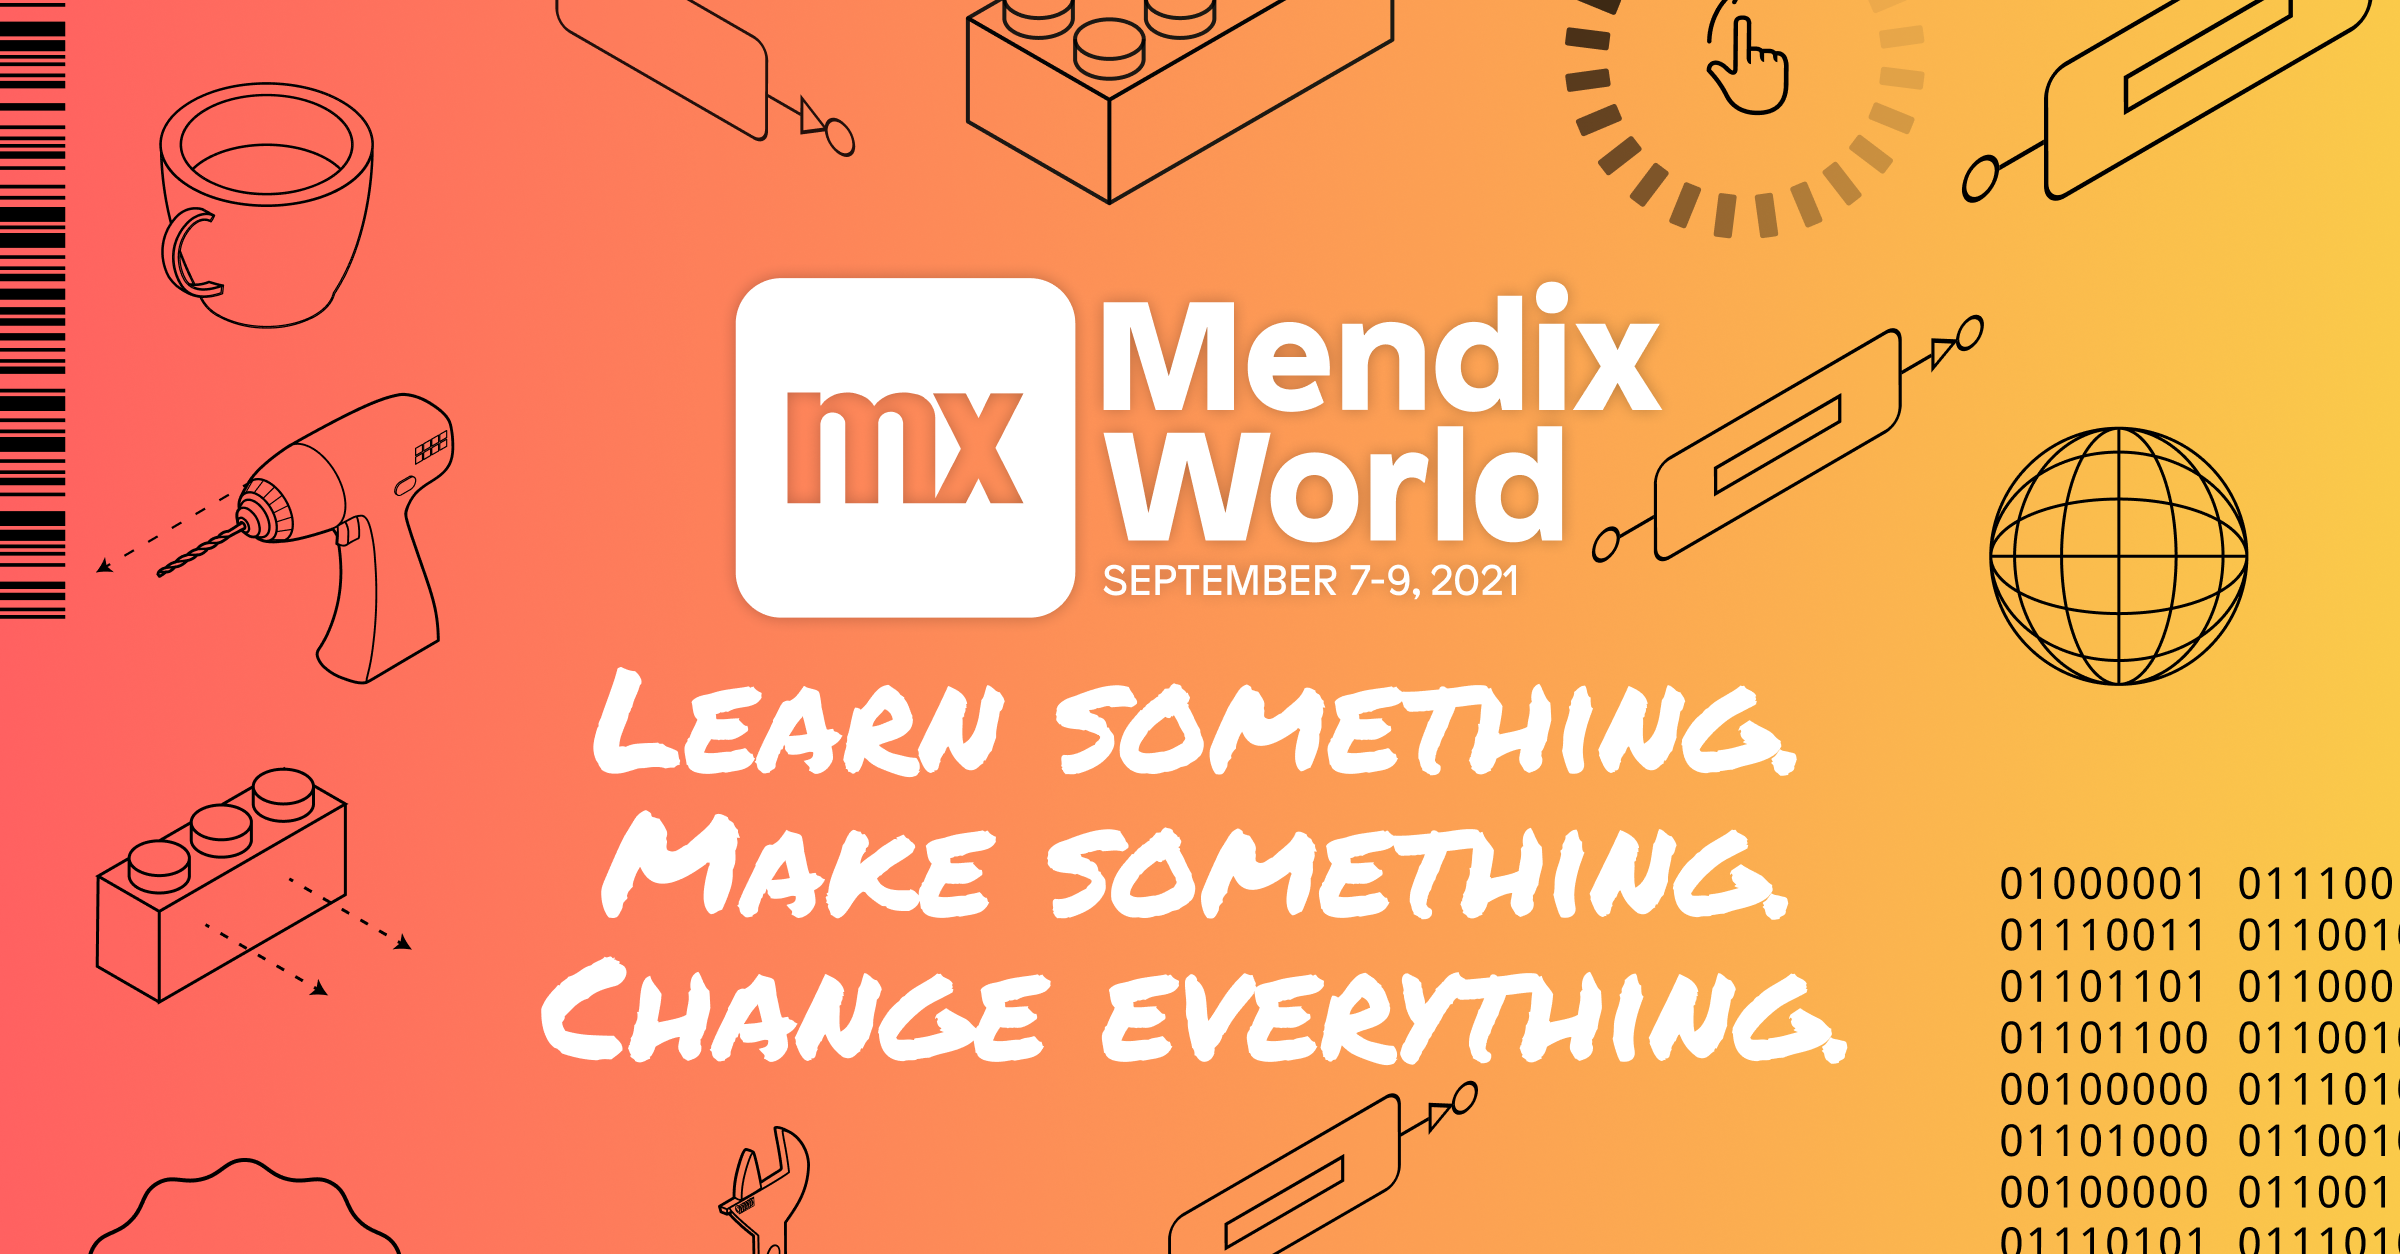 Mendix World 2021